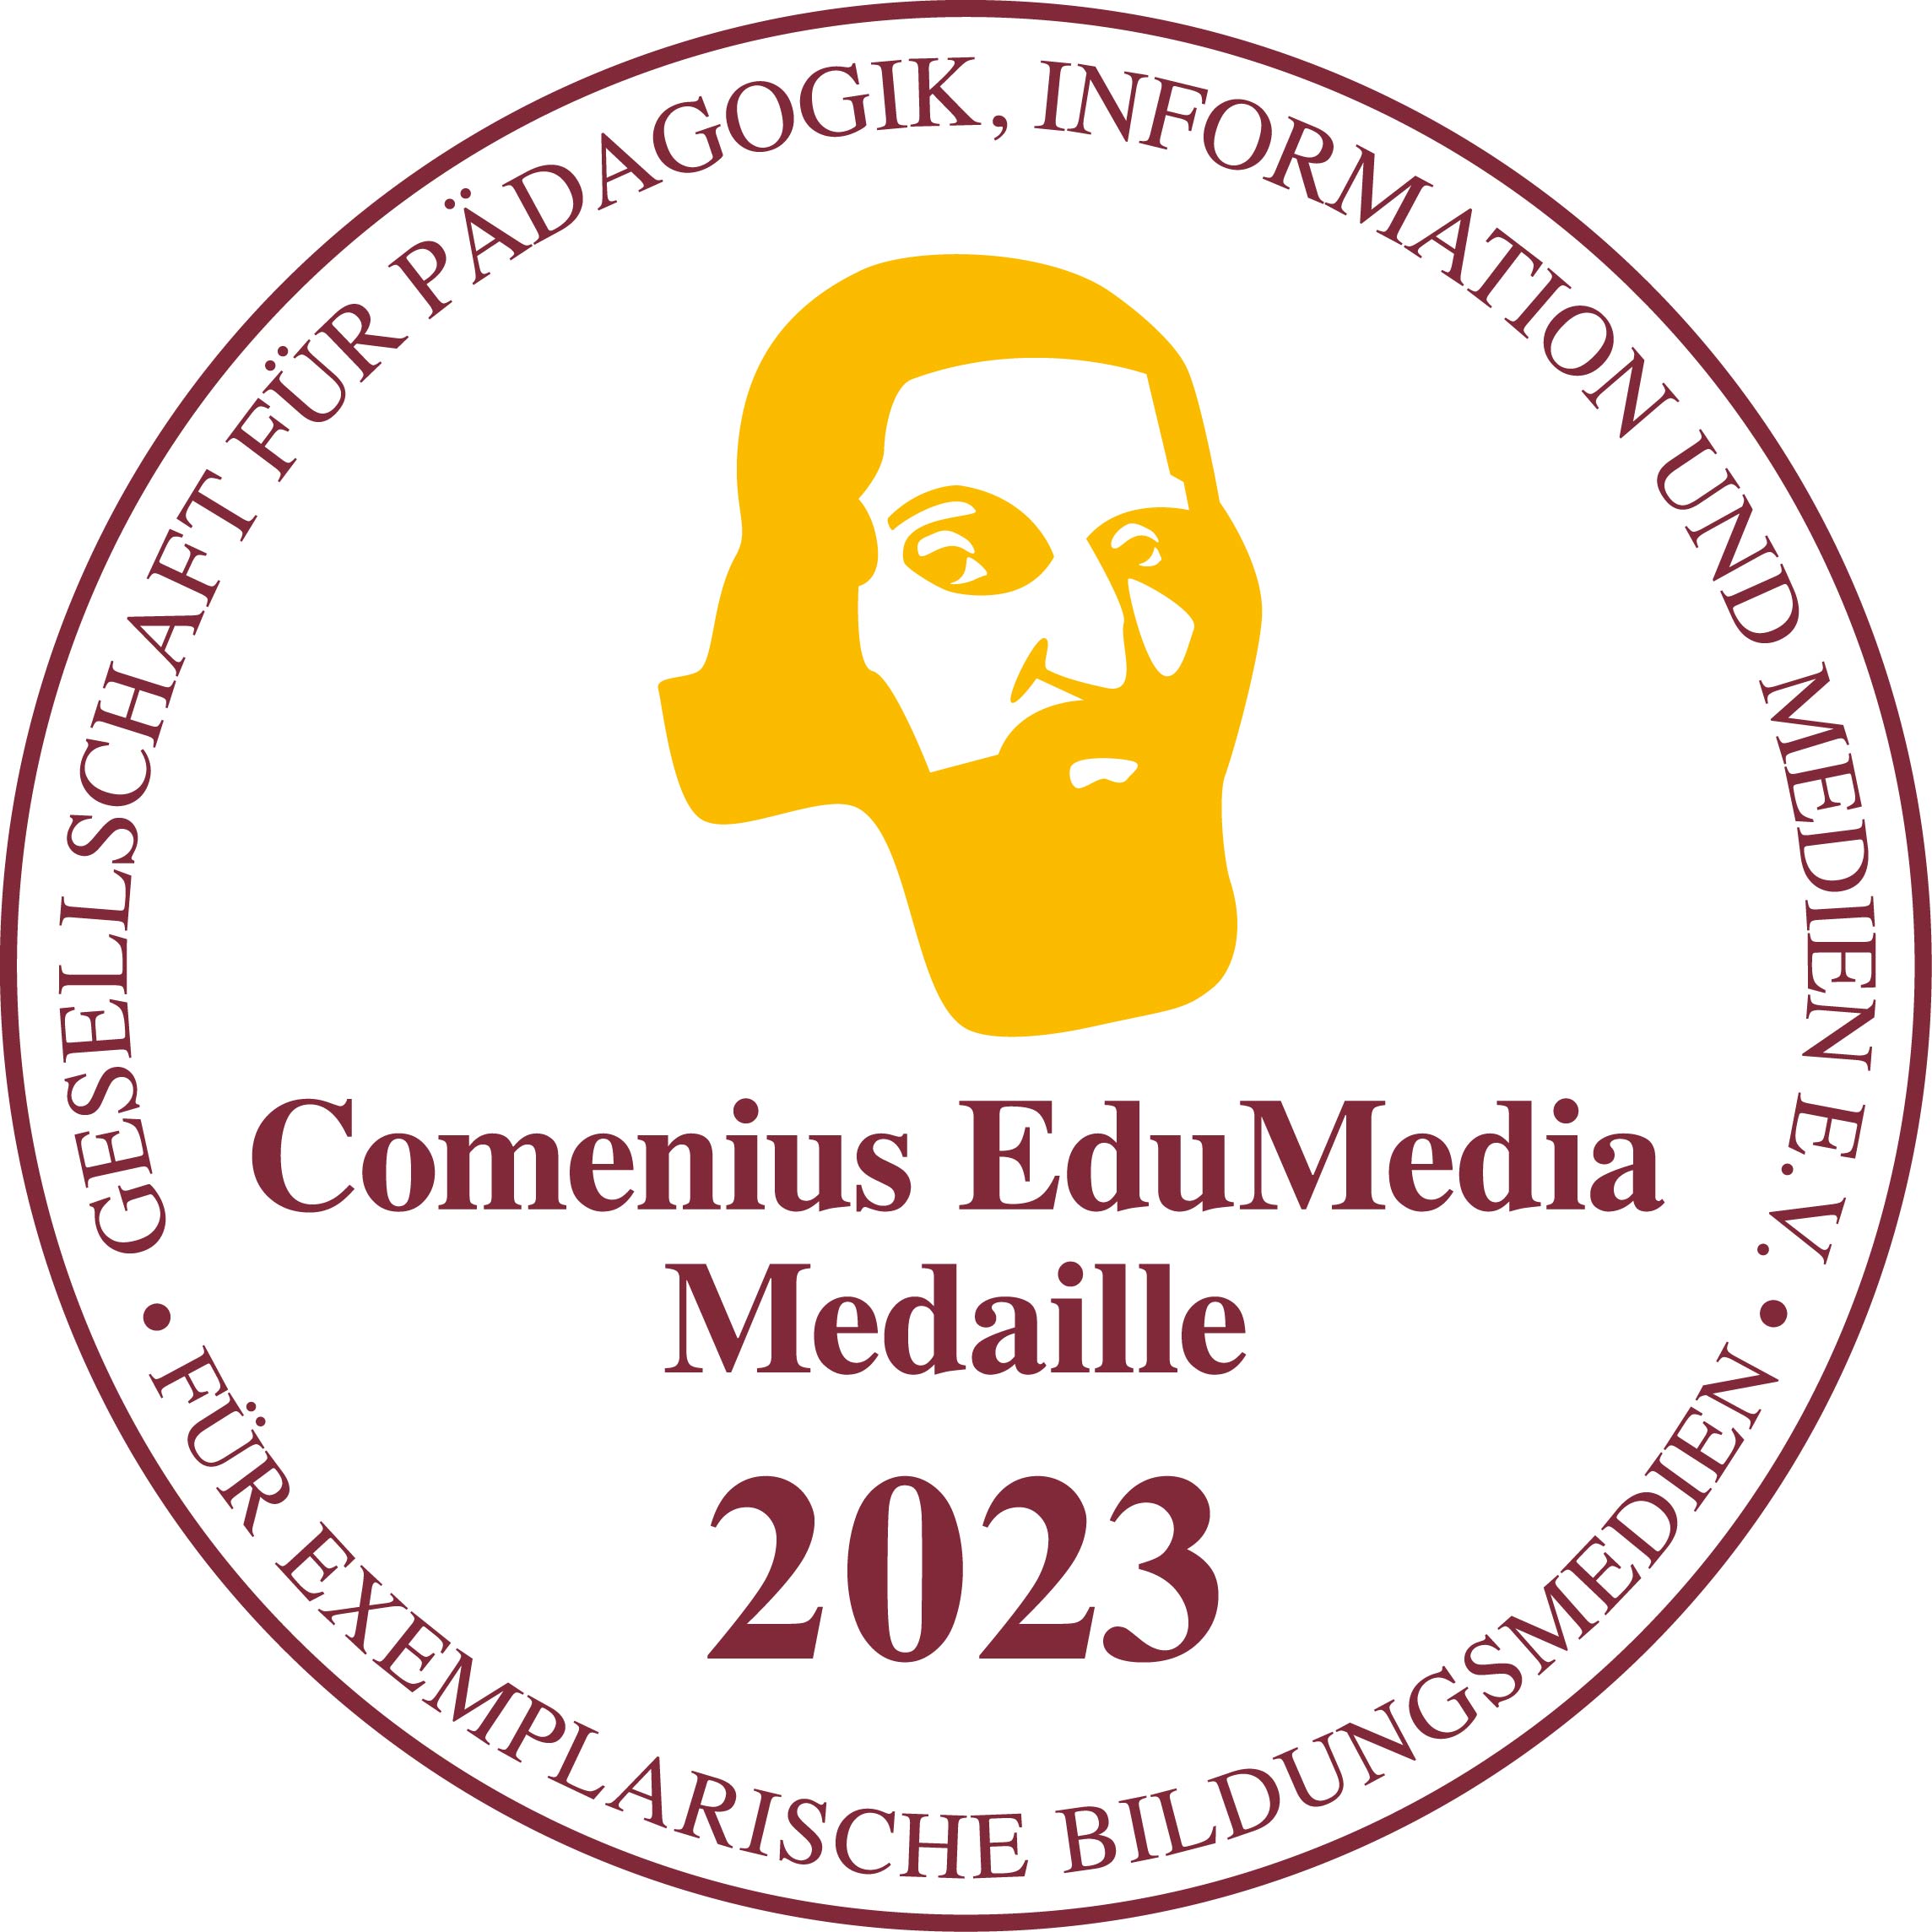 Comenius EduMedia Medaille 2023